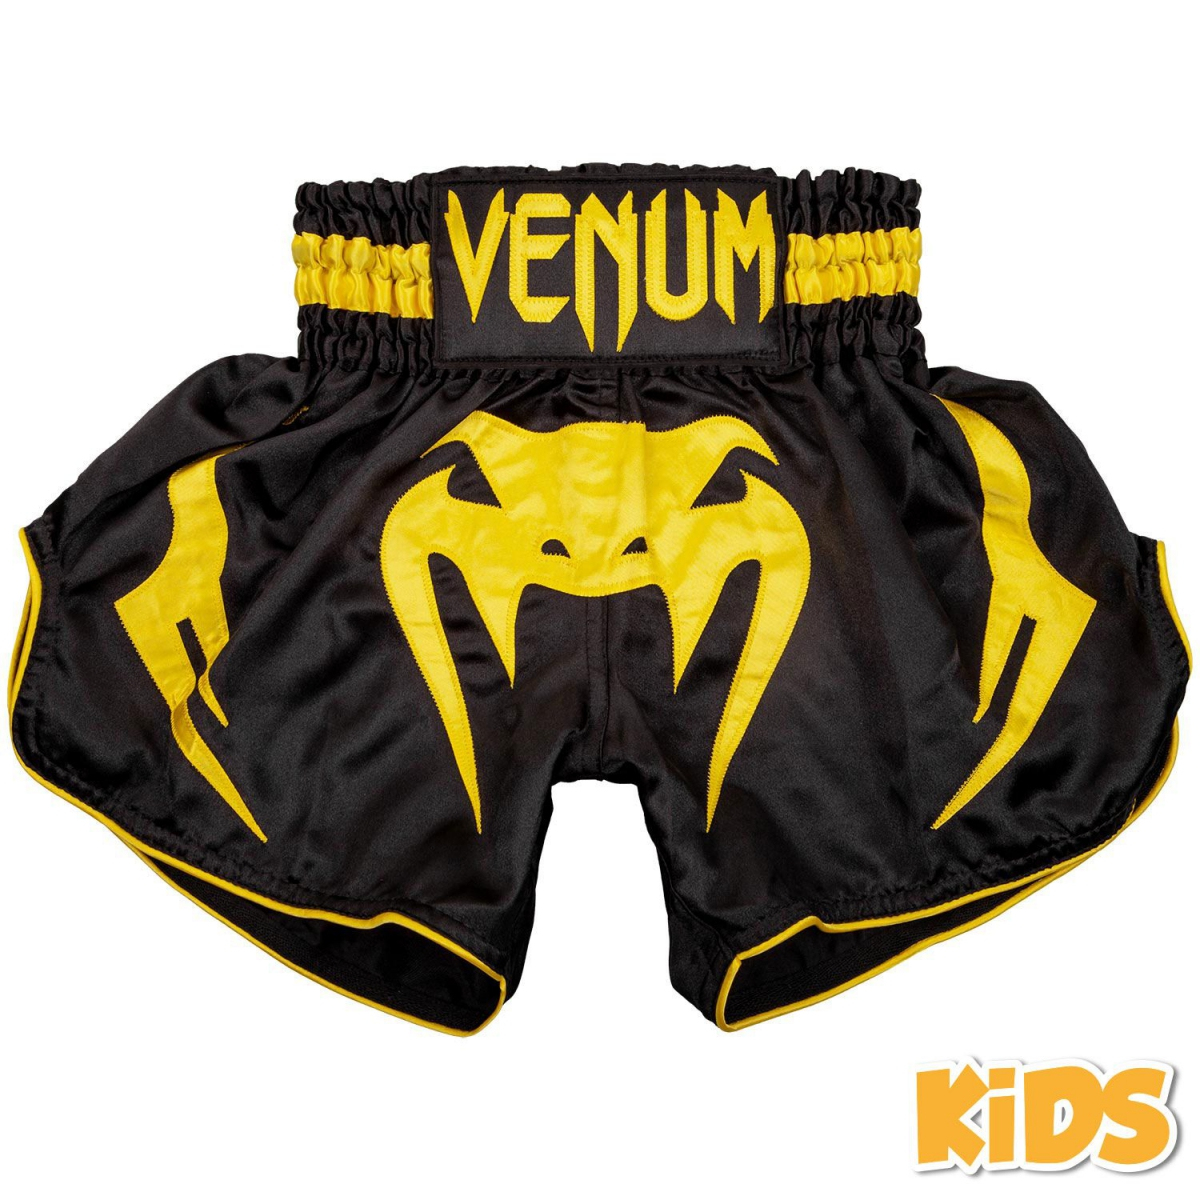 Детские шорты для для тайского бокса Venum Inferno Kids Muay Thai Shorts Black Yellow